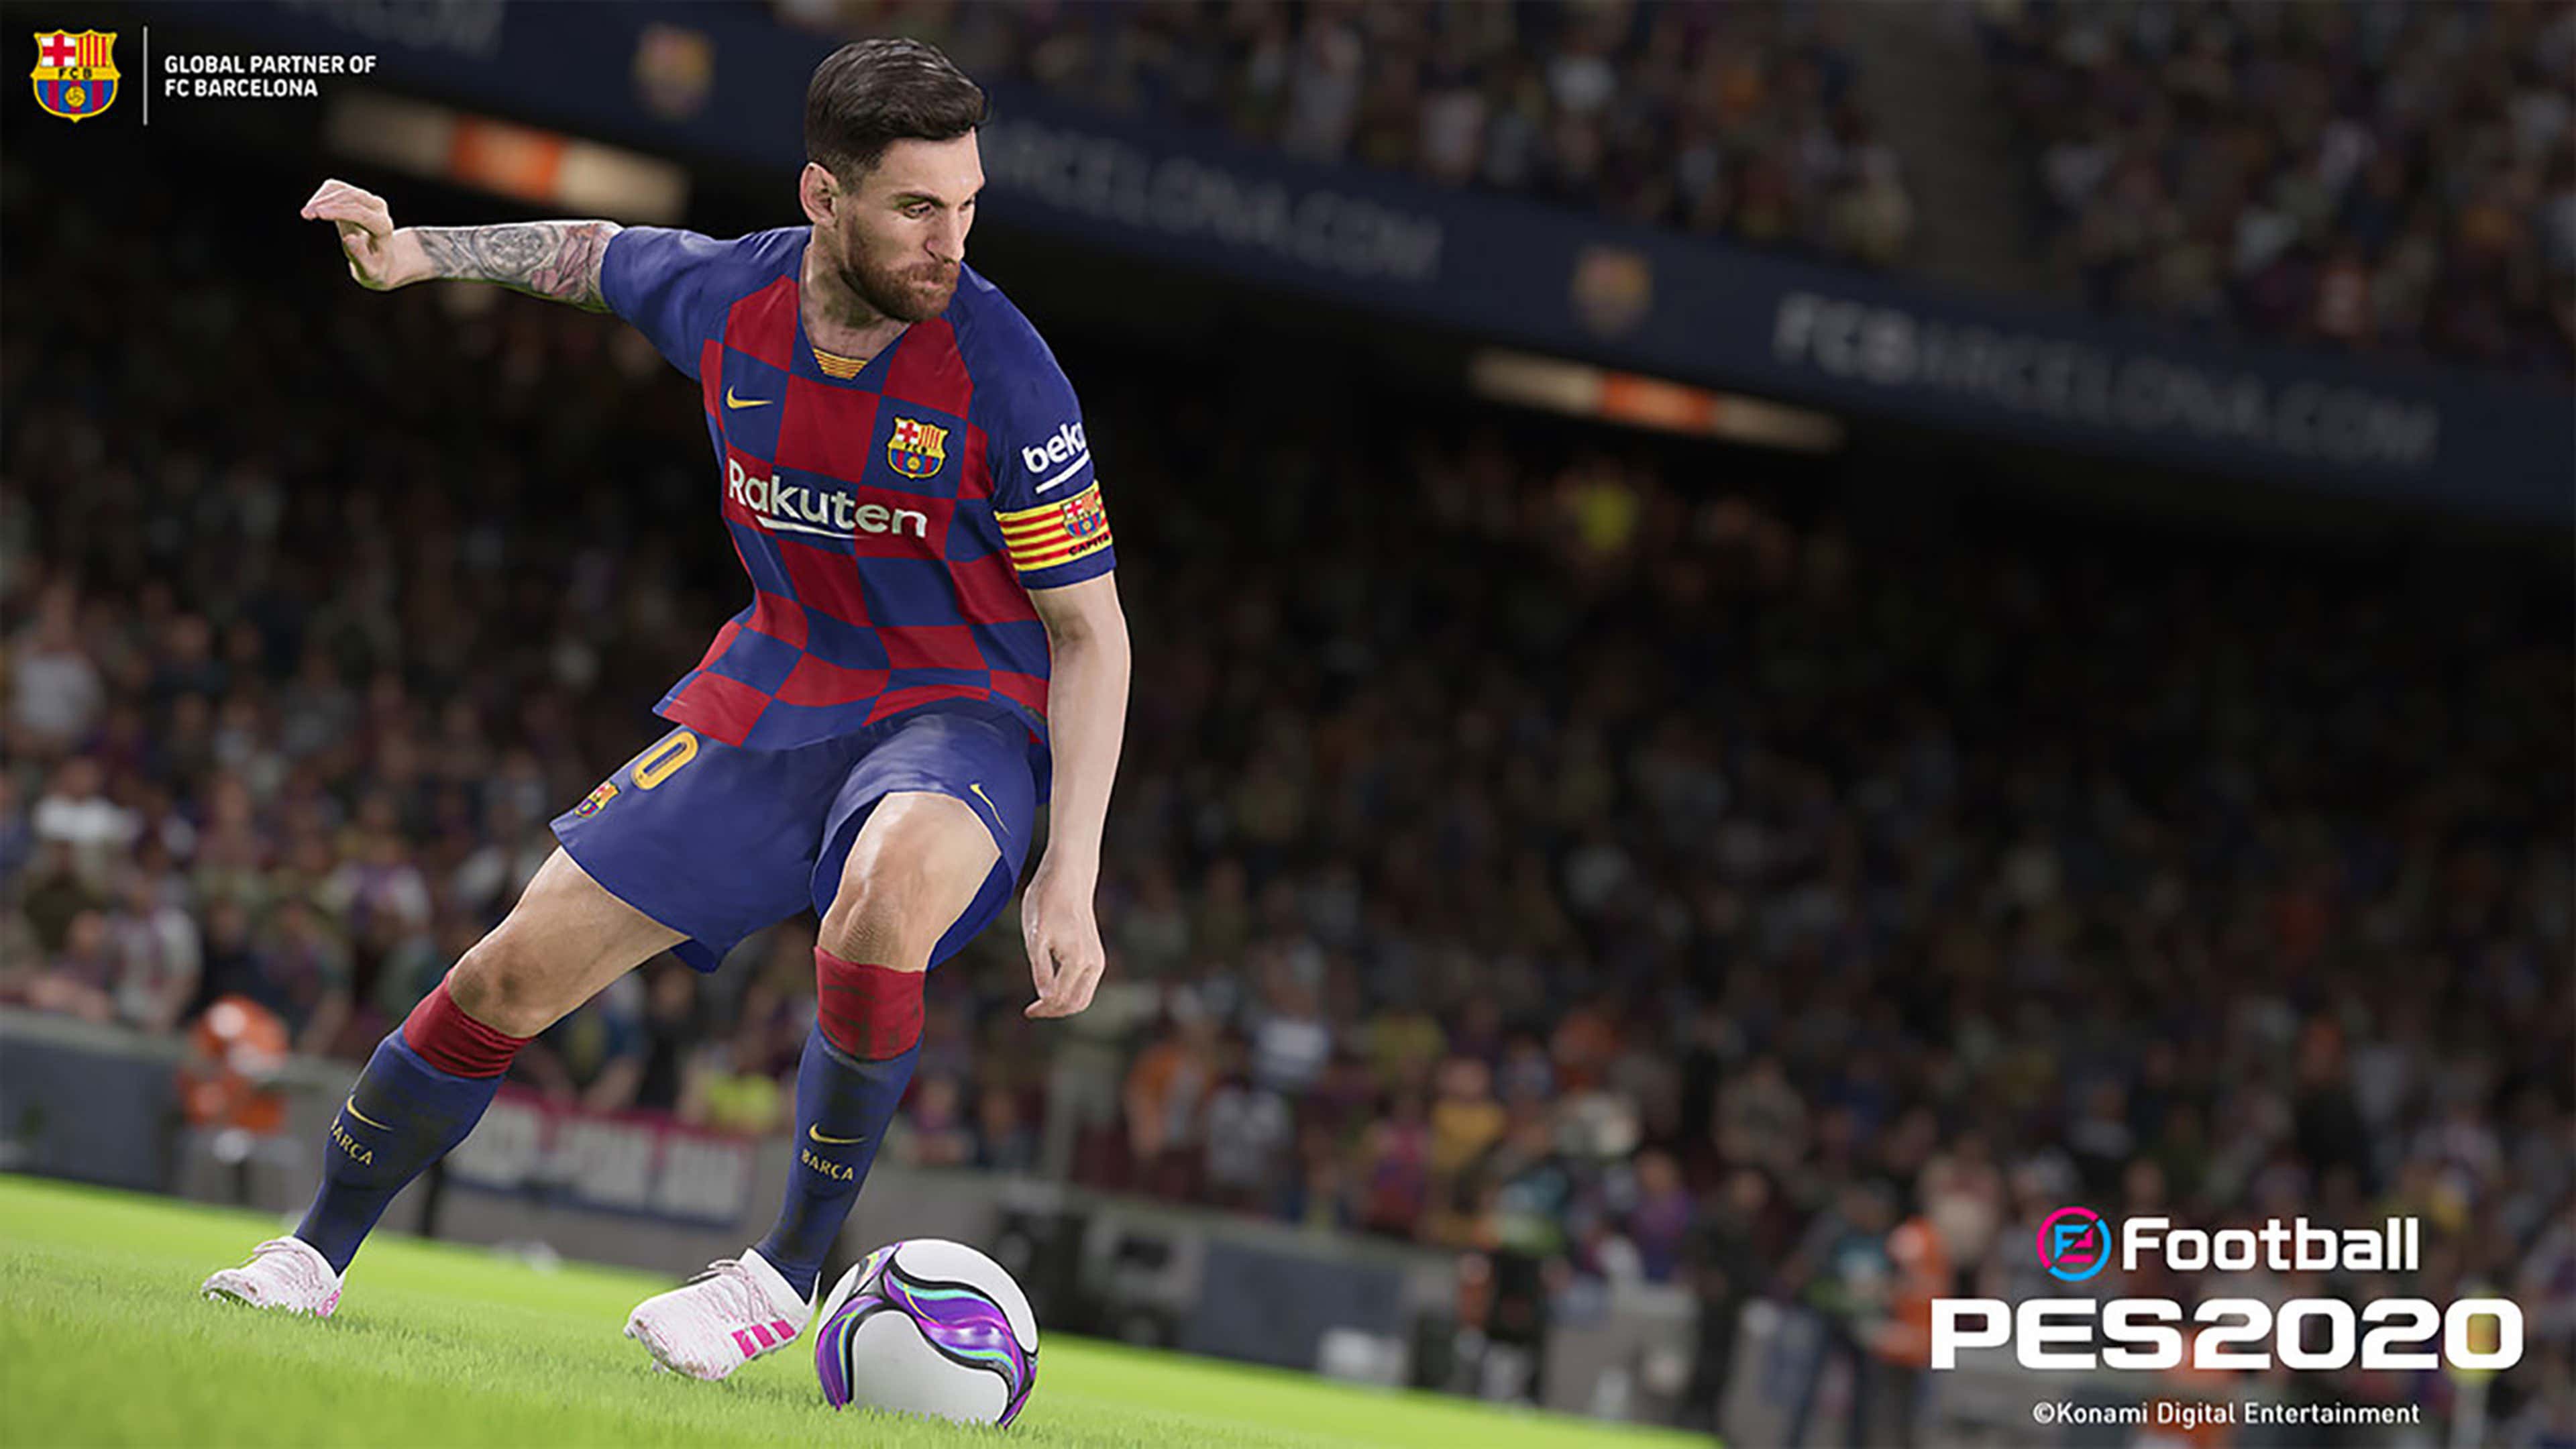 PES 2020 Pro Evolution Soccer 2020 Lionel Messi